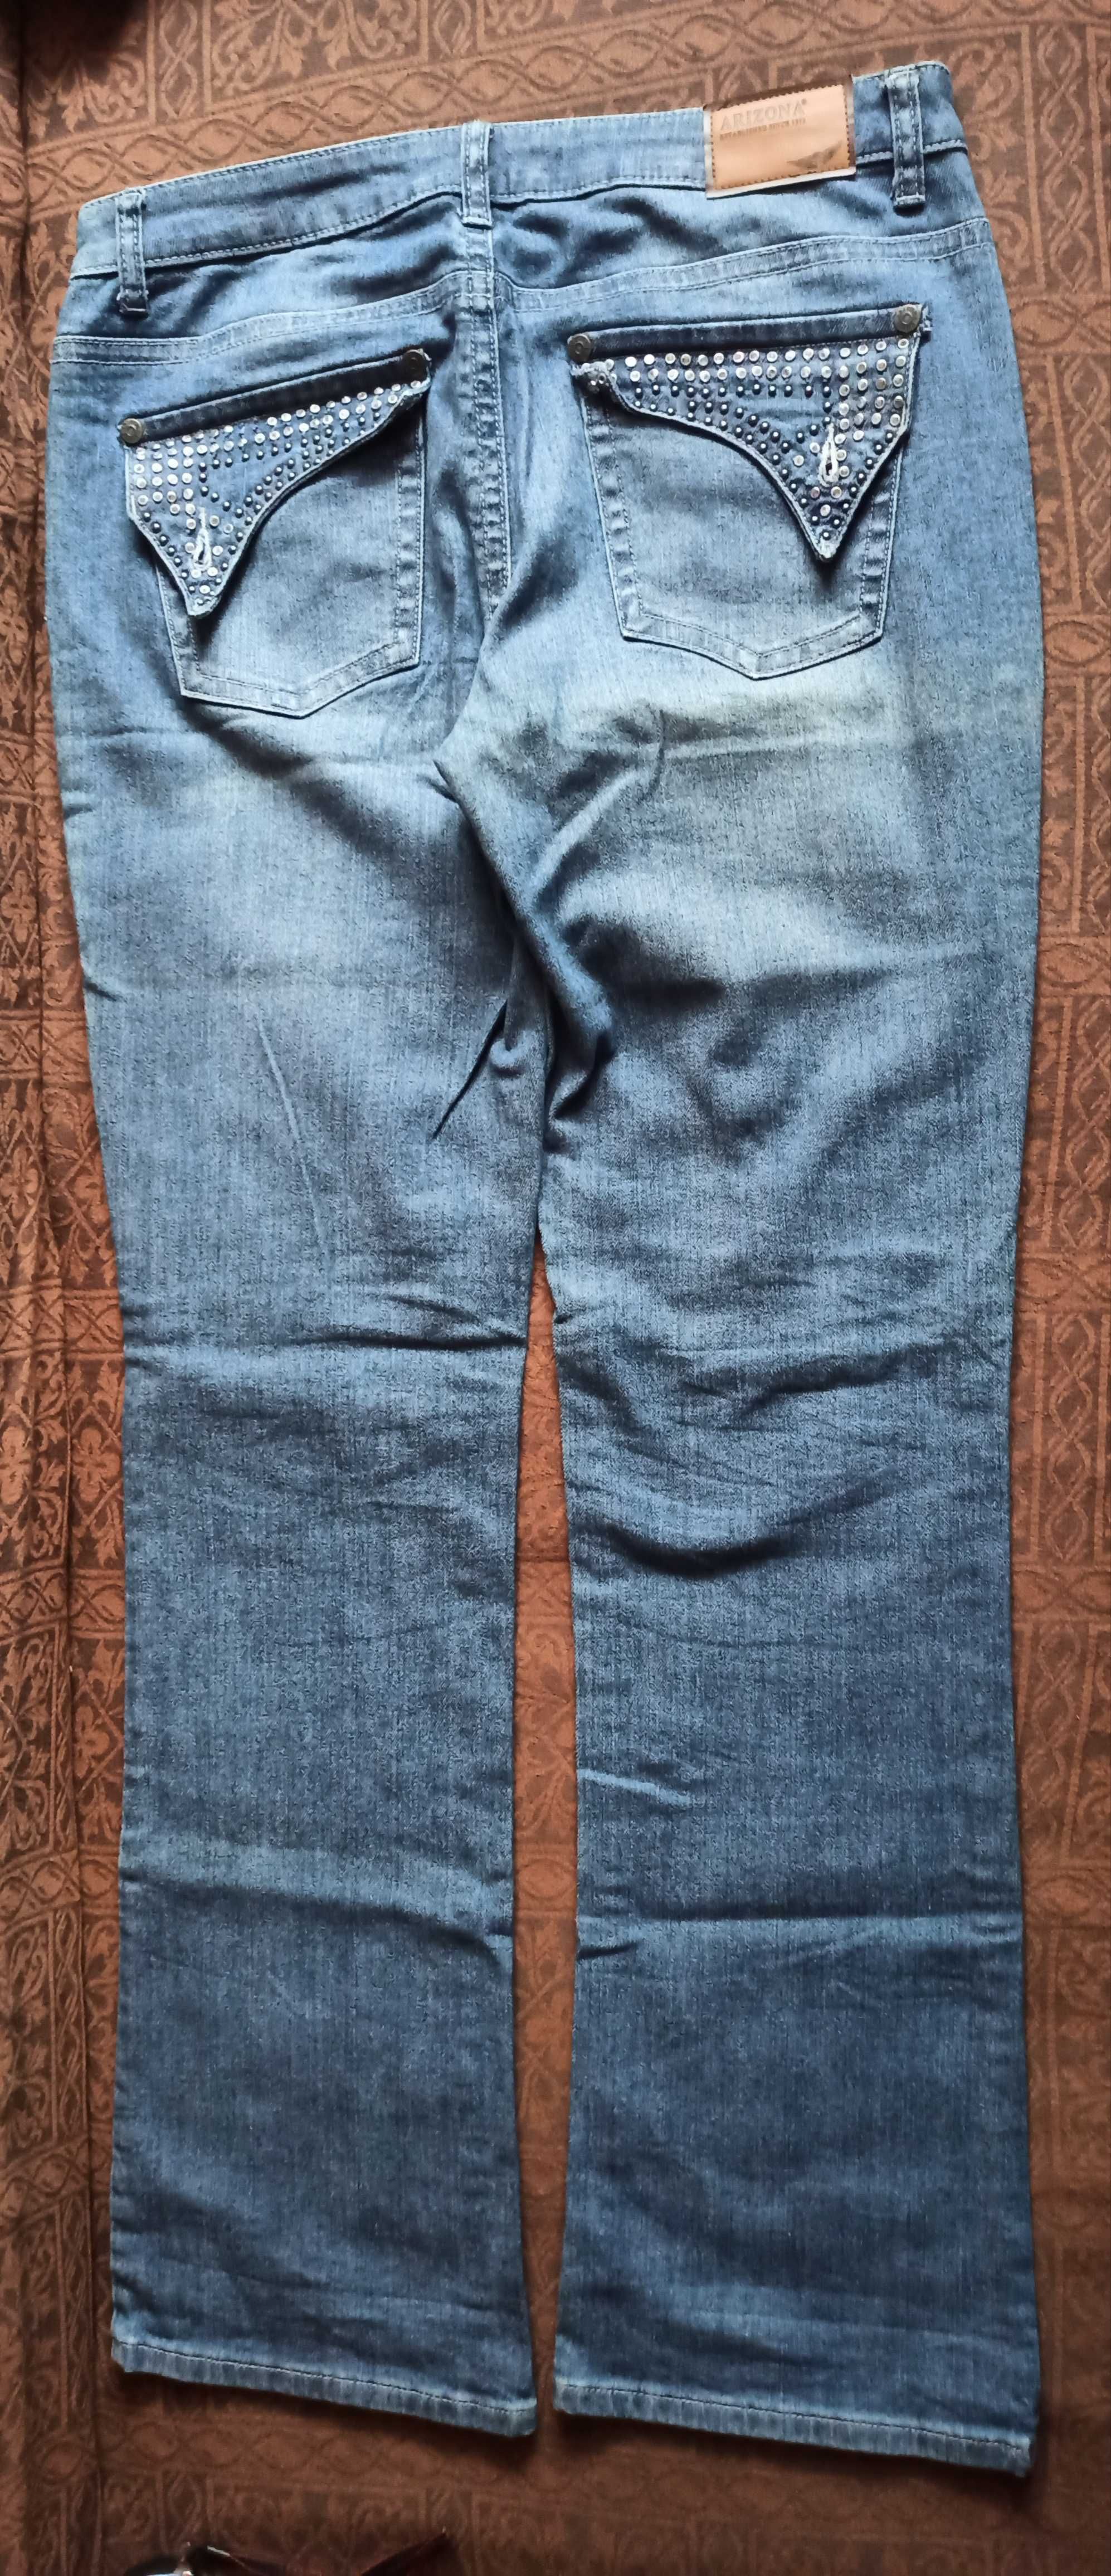 Arizona spodnie jeansowe r. 42 (84)